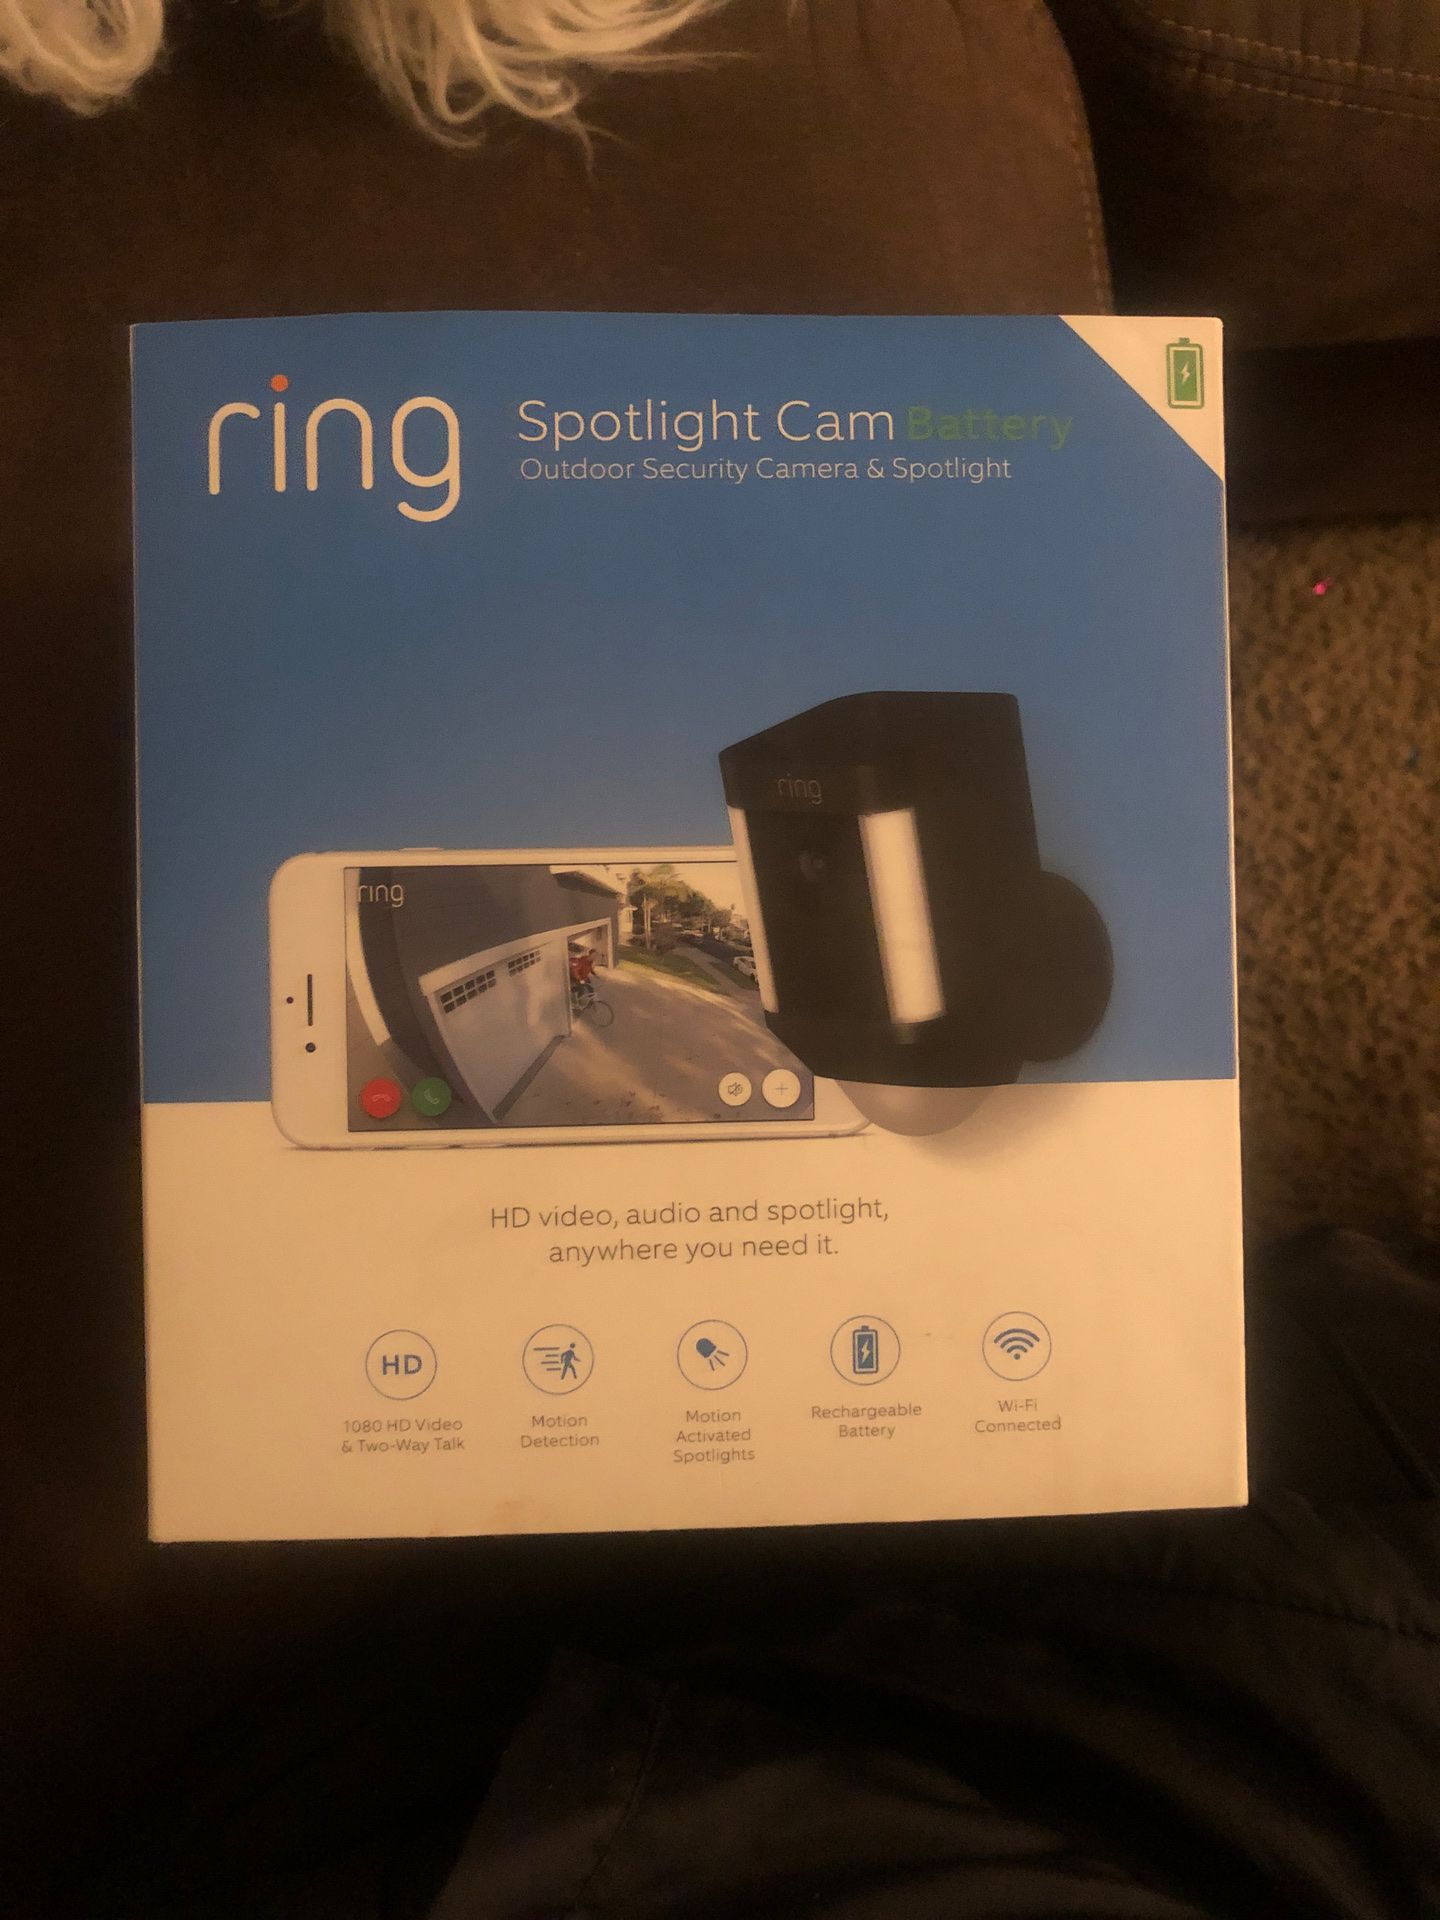 Ring Spotlight Cam Battery